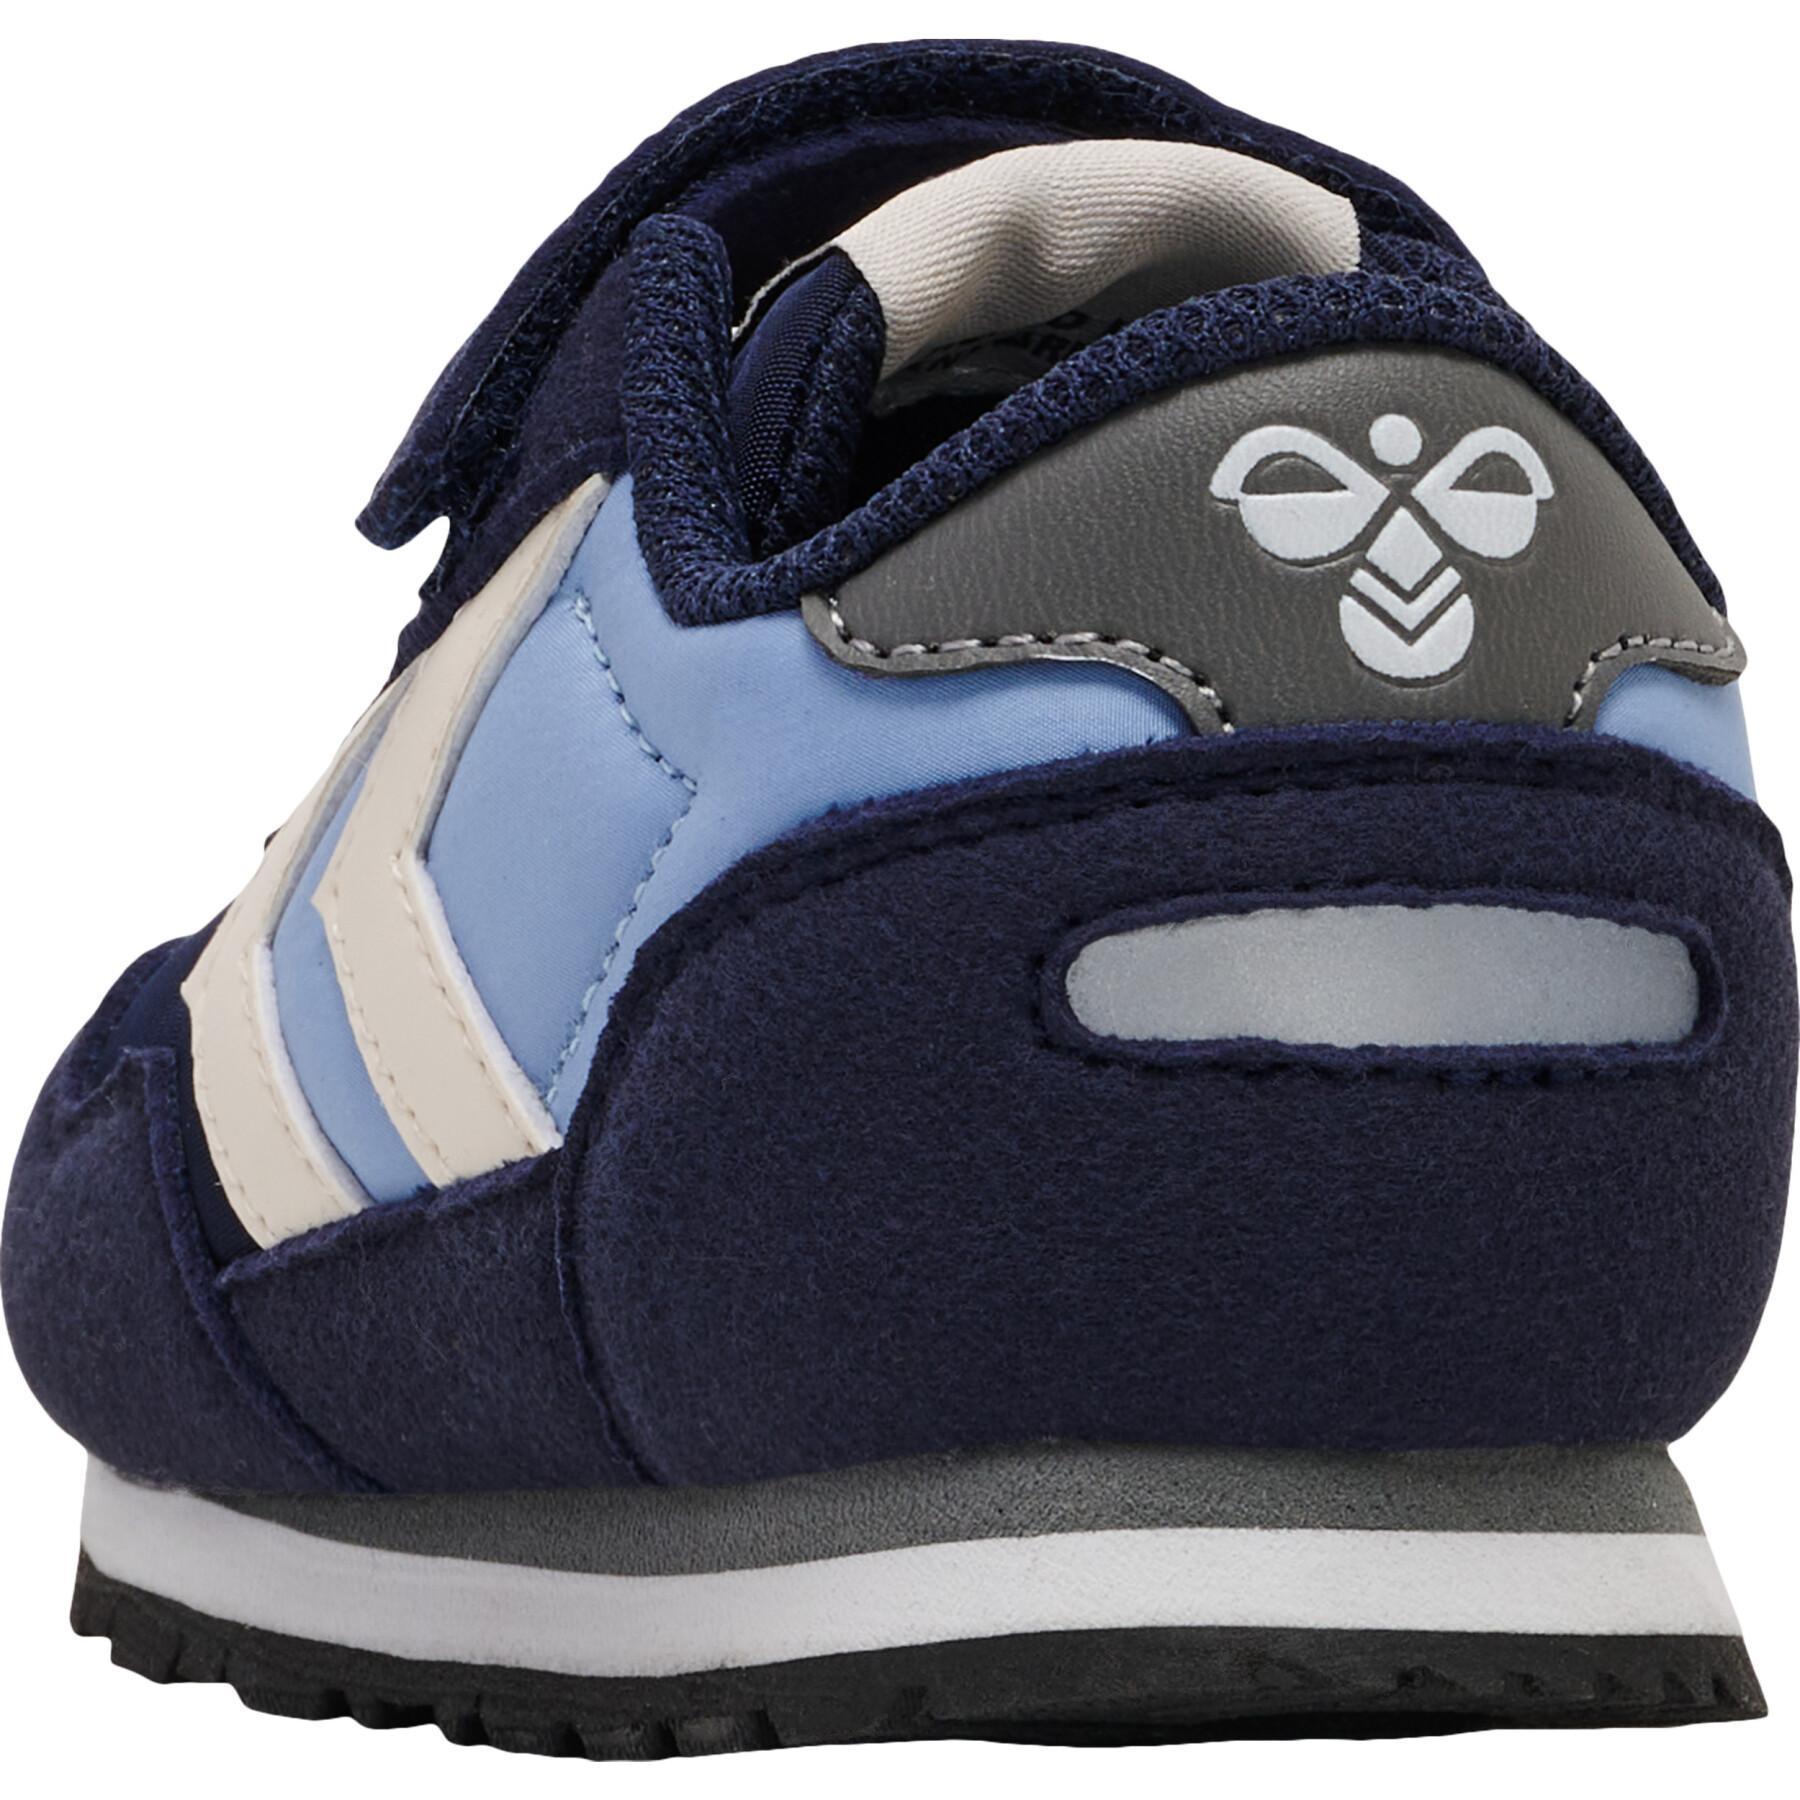 Sneakers für Babies Hummel Reflex